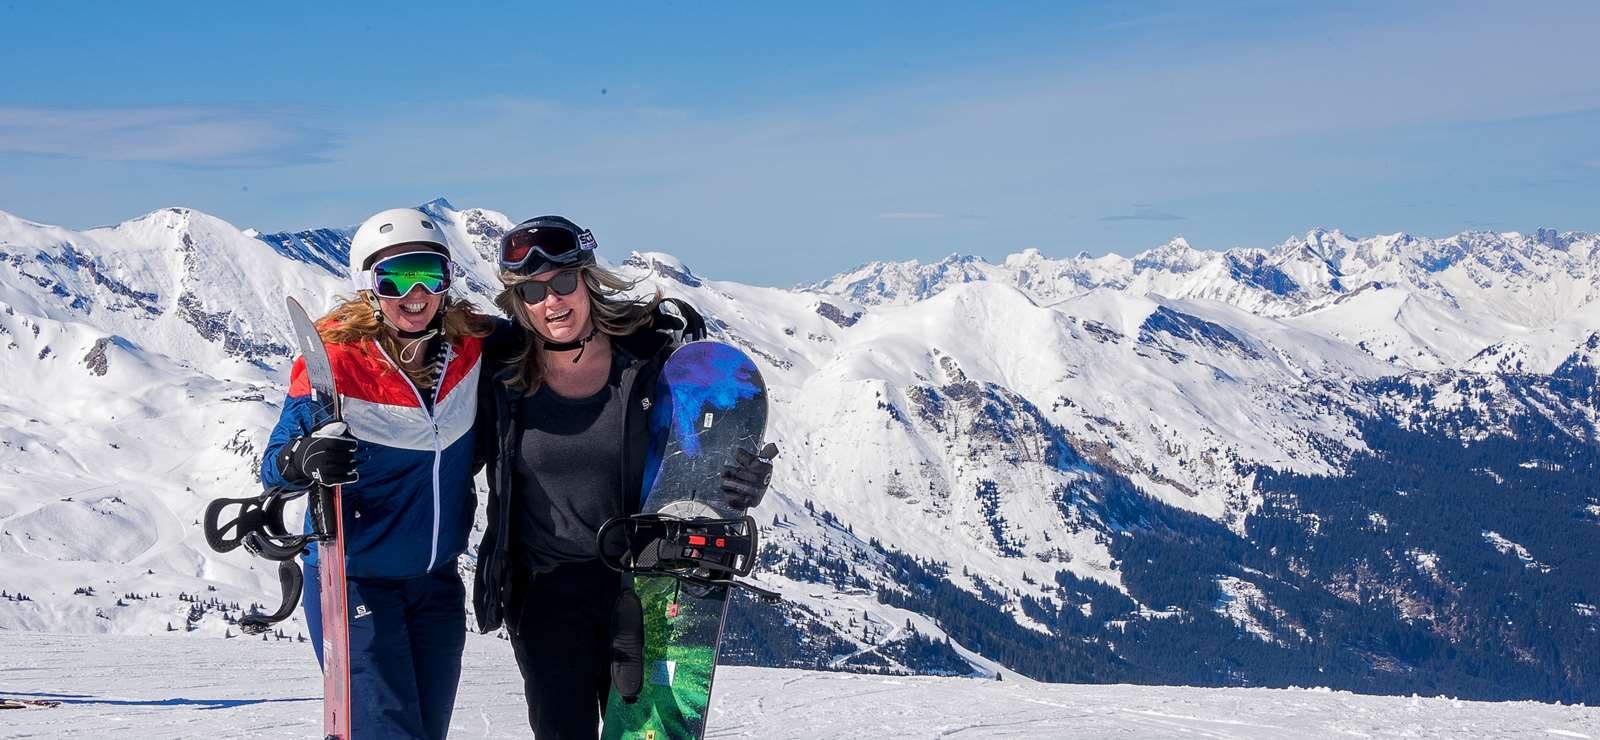 Snowboarding in Bad Gastein